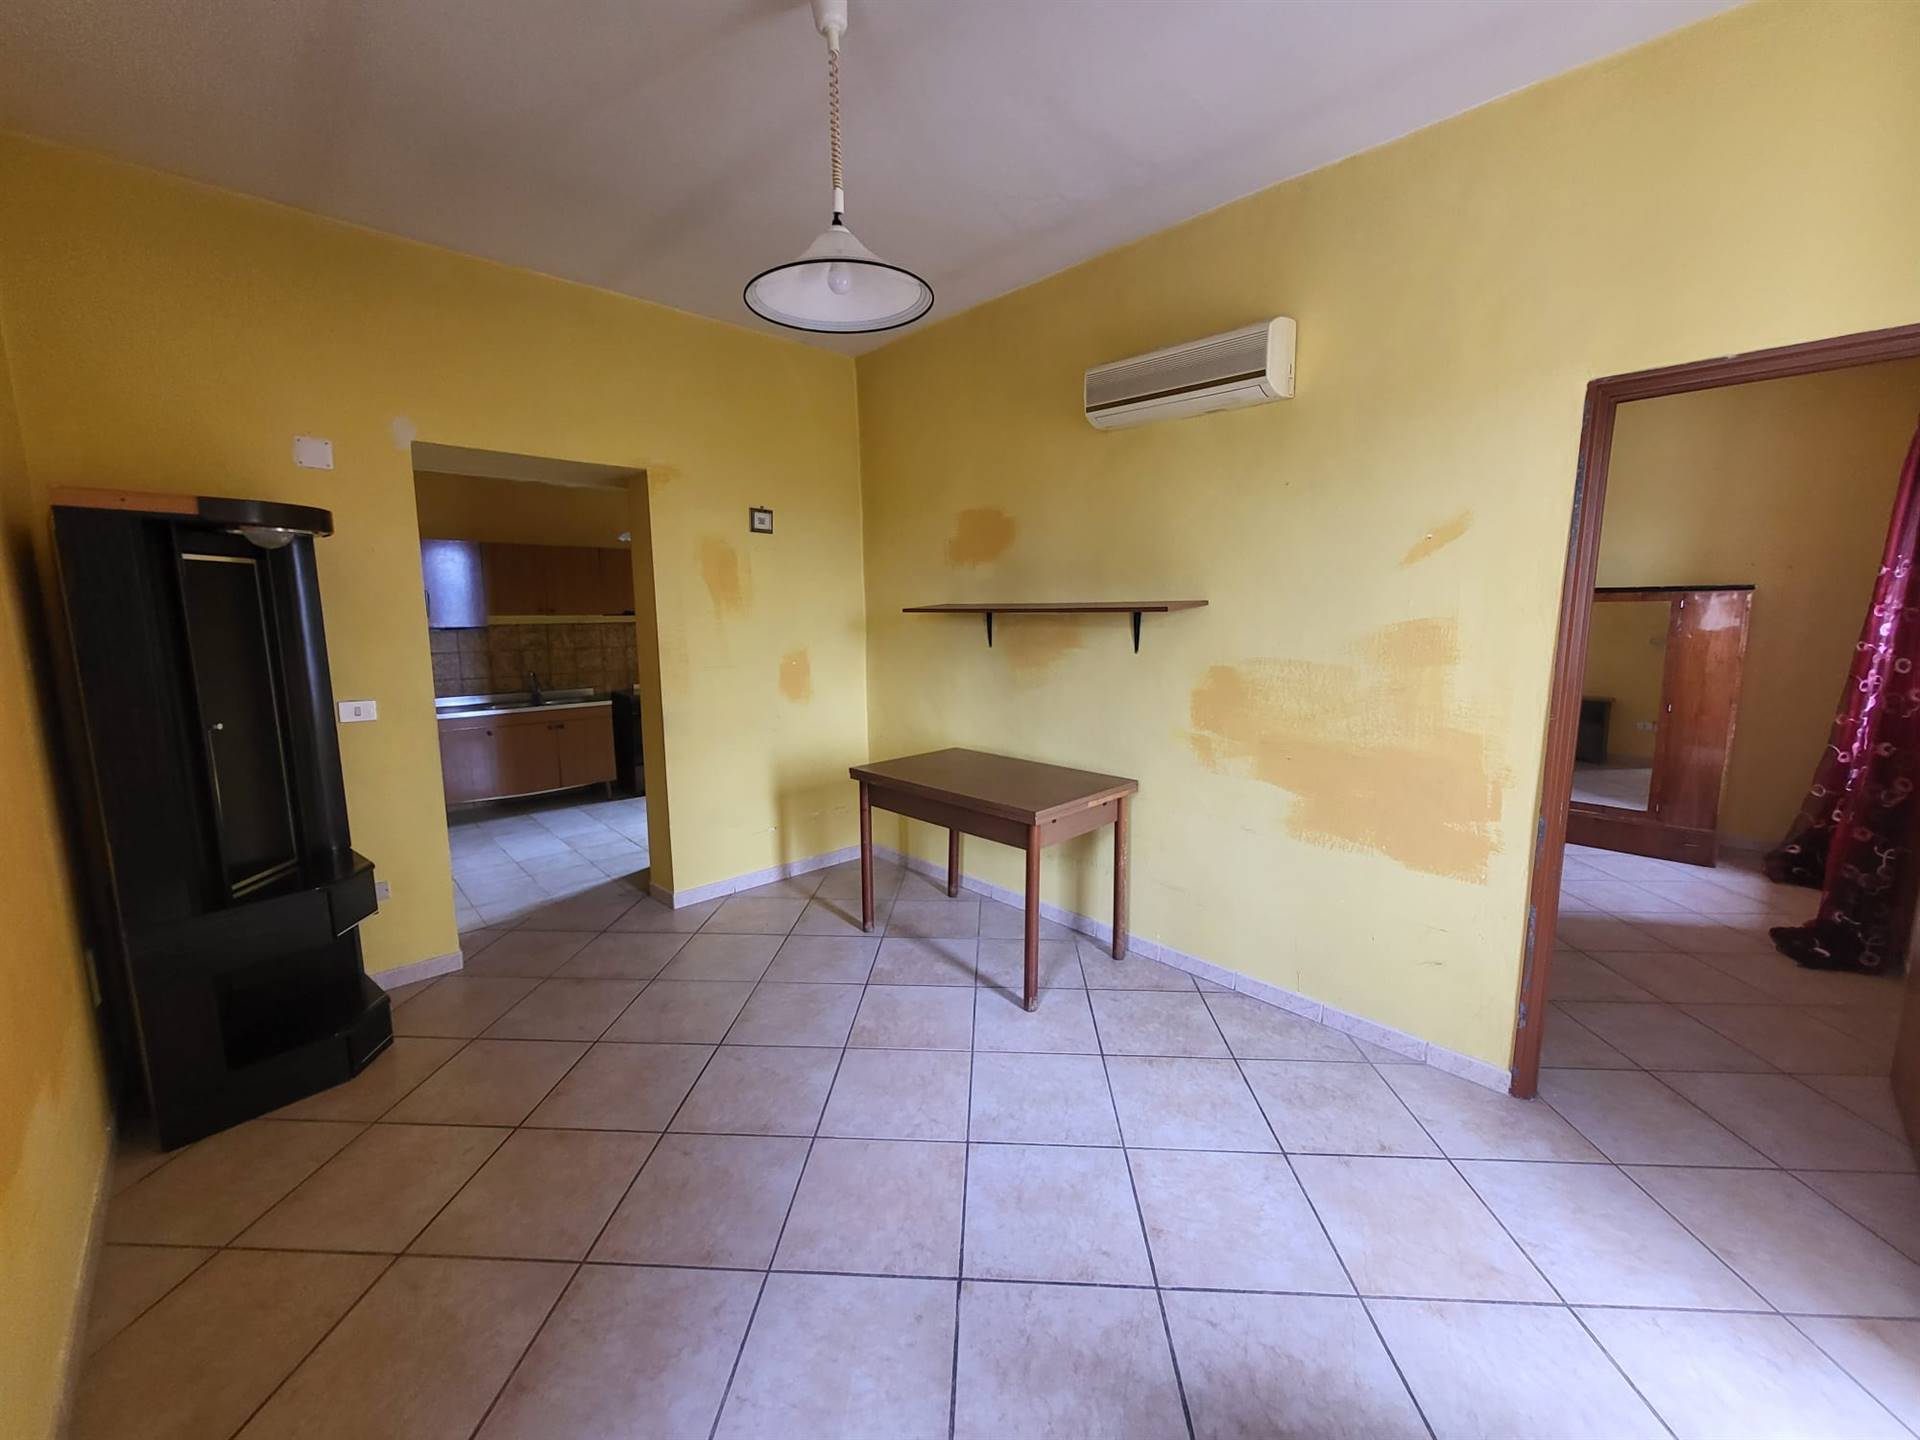 Appartamento in vendita a Montalto Uffugo, 3 locali, prezzo € 18.000 | CambioCasa.it